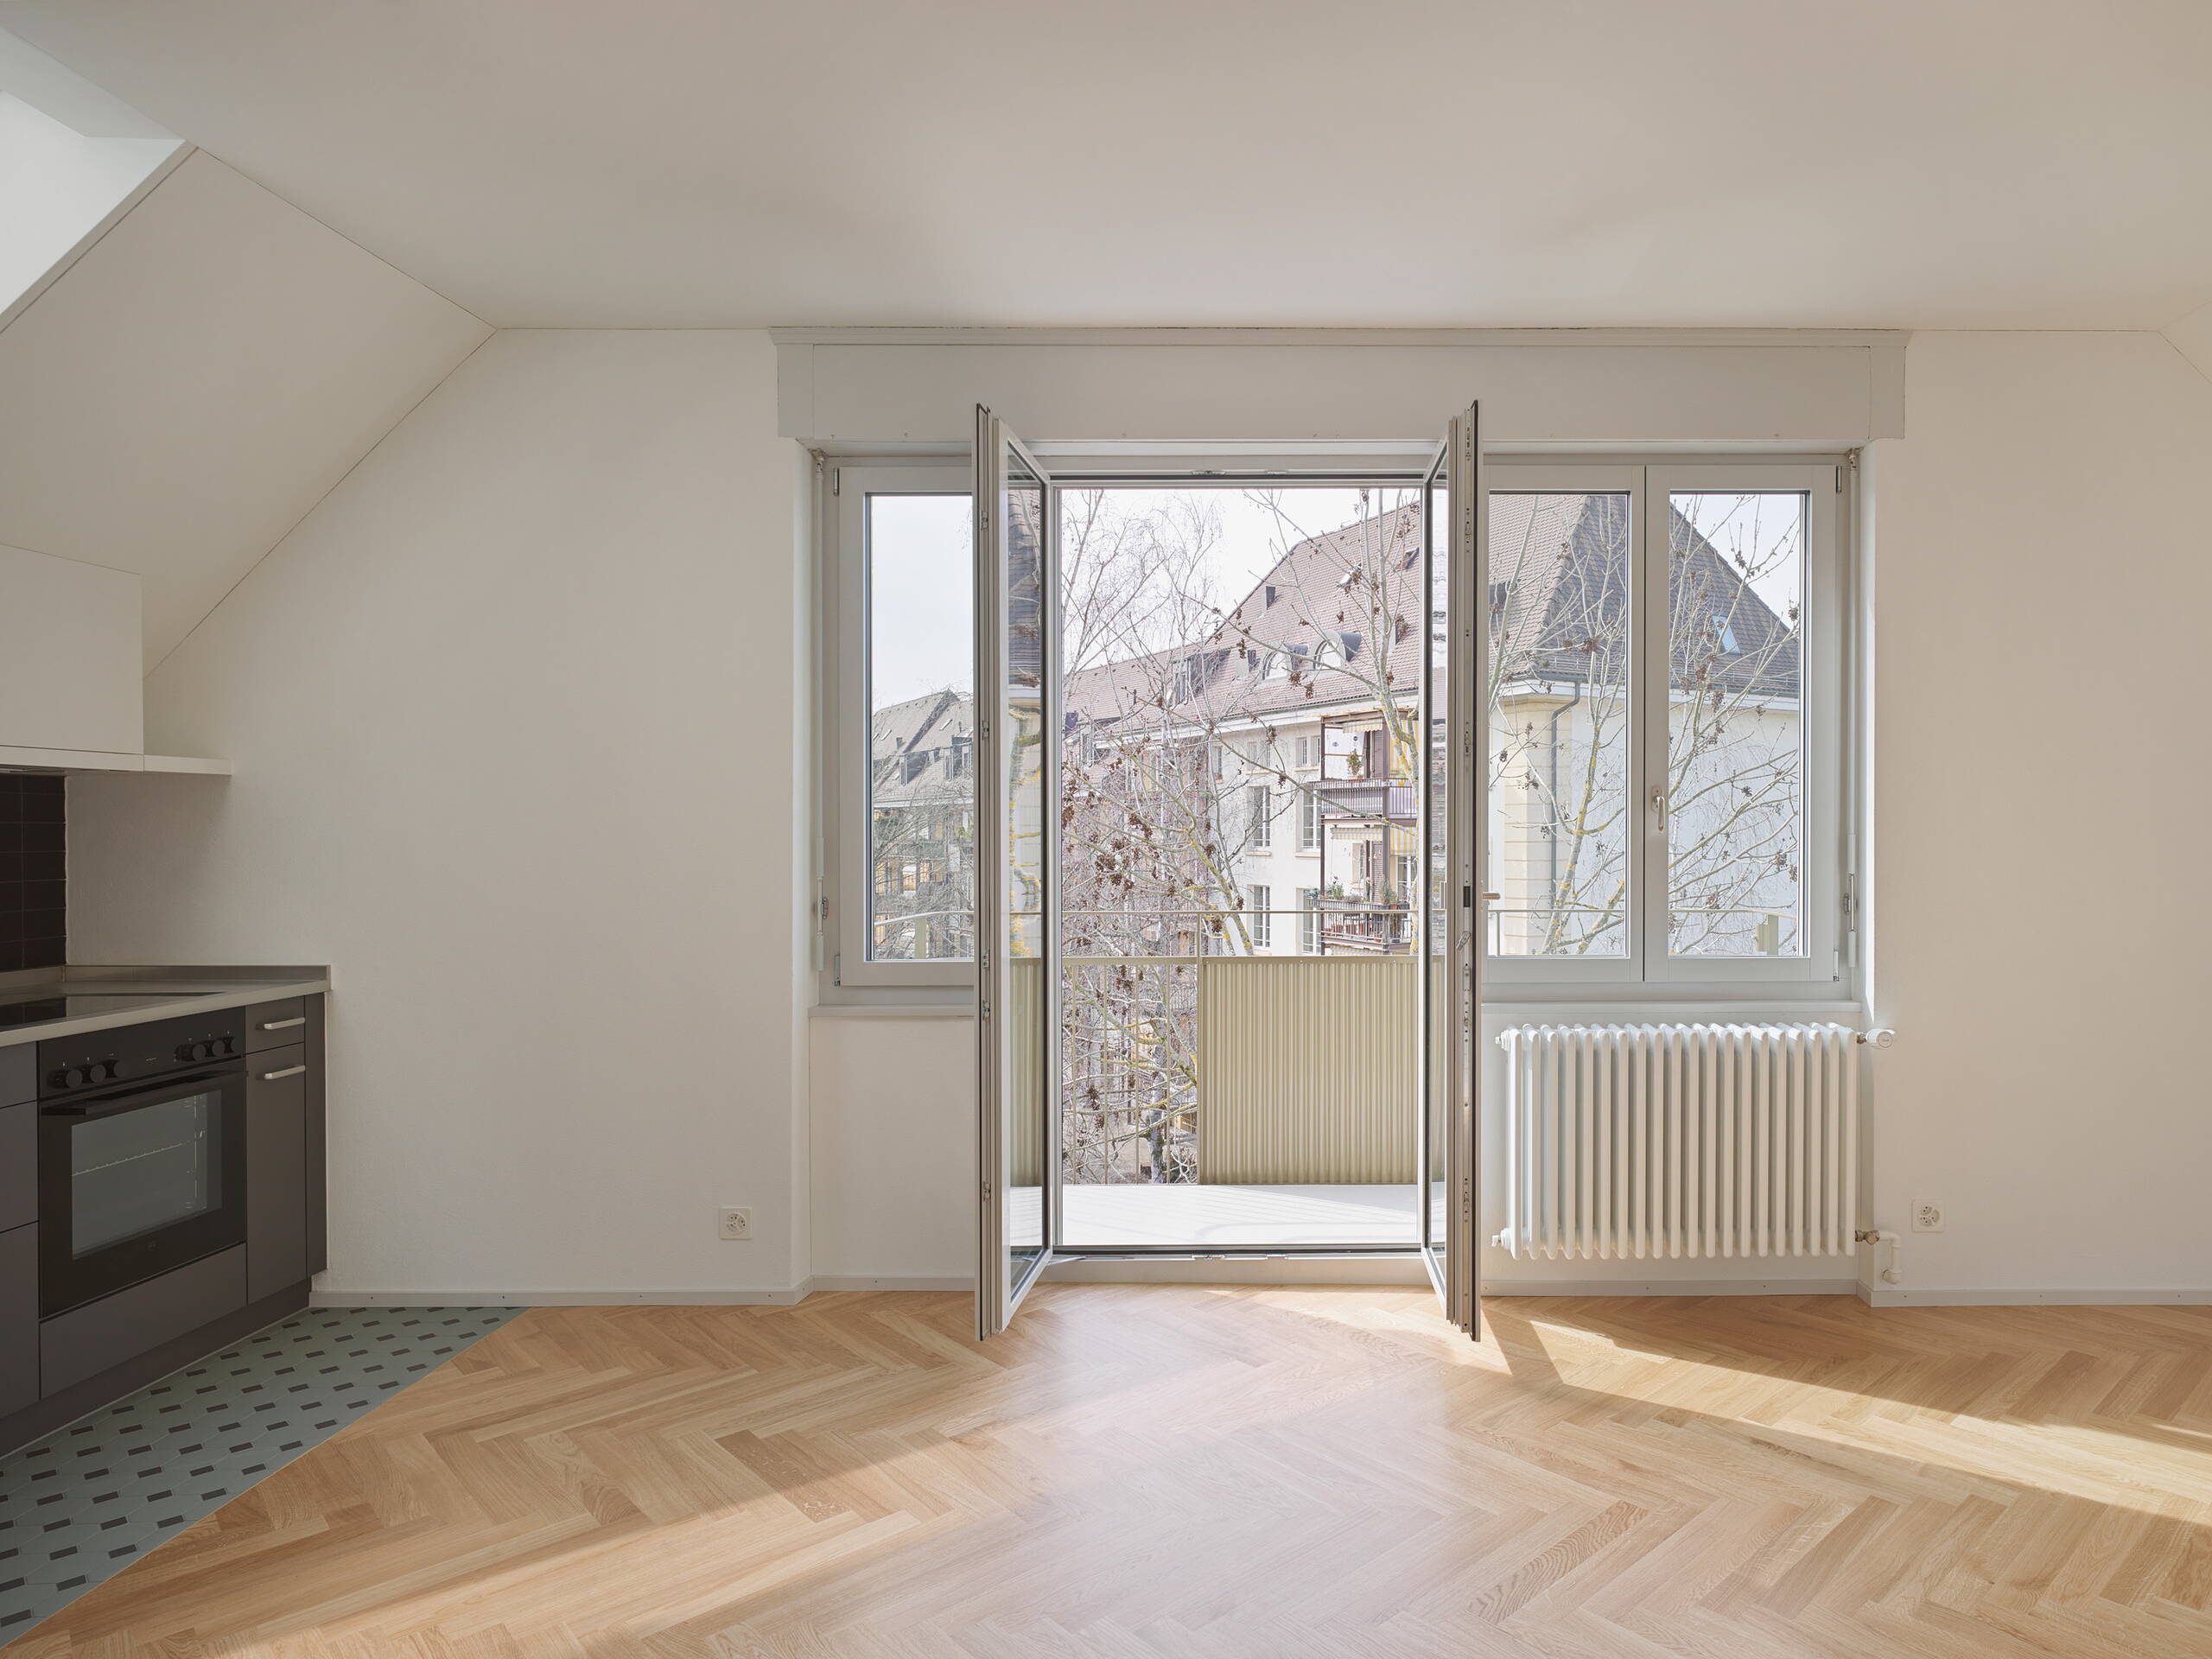 Mehrfamilienhaus, Milchbuck Zürich, Blick aus Wohnzimmer durch offene Balkontüre in Hof